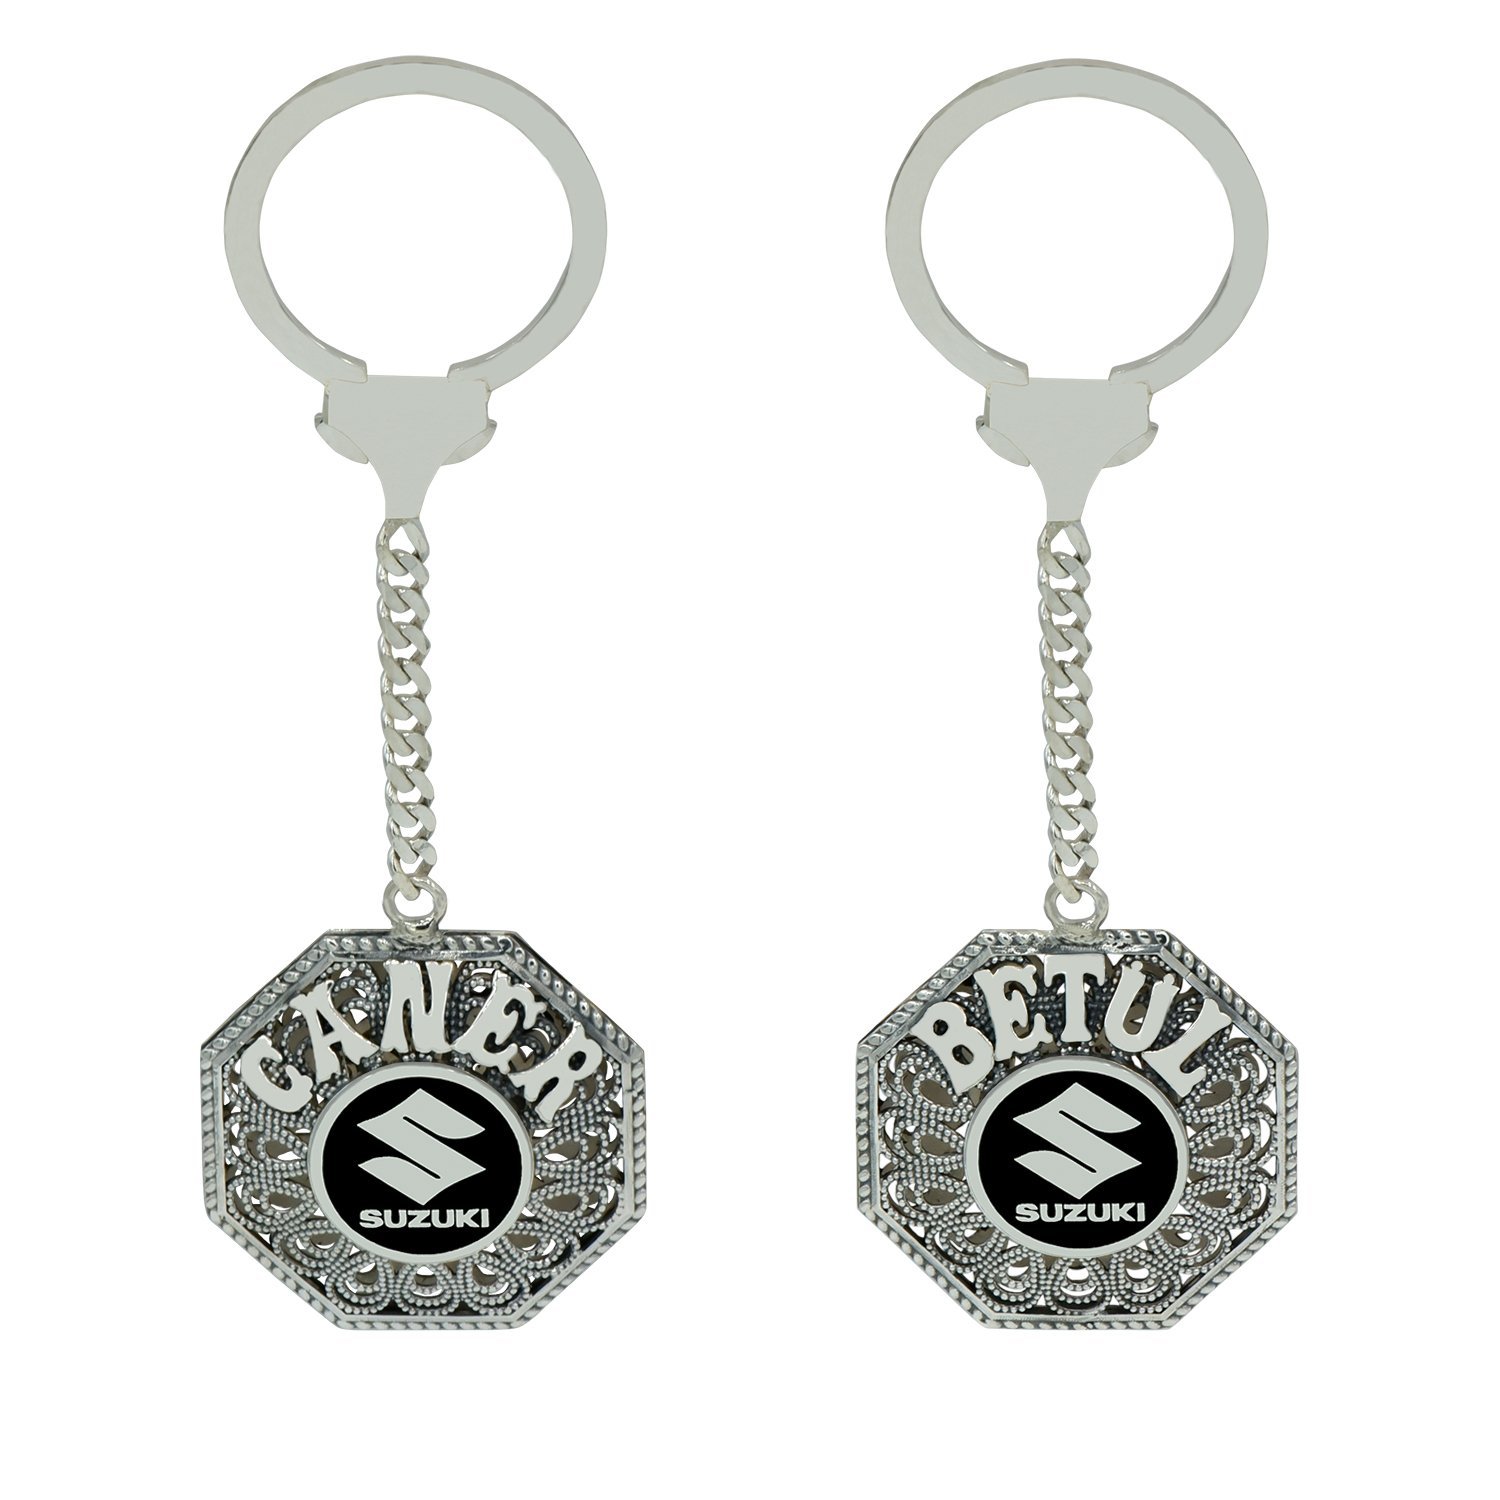 Gümüş Suzuki Logolu Telkari İsimli Anahtarlık